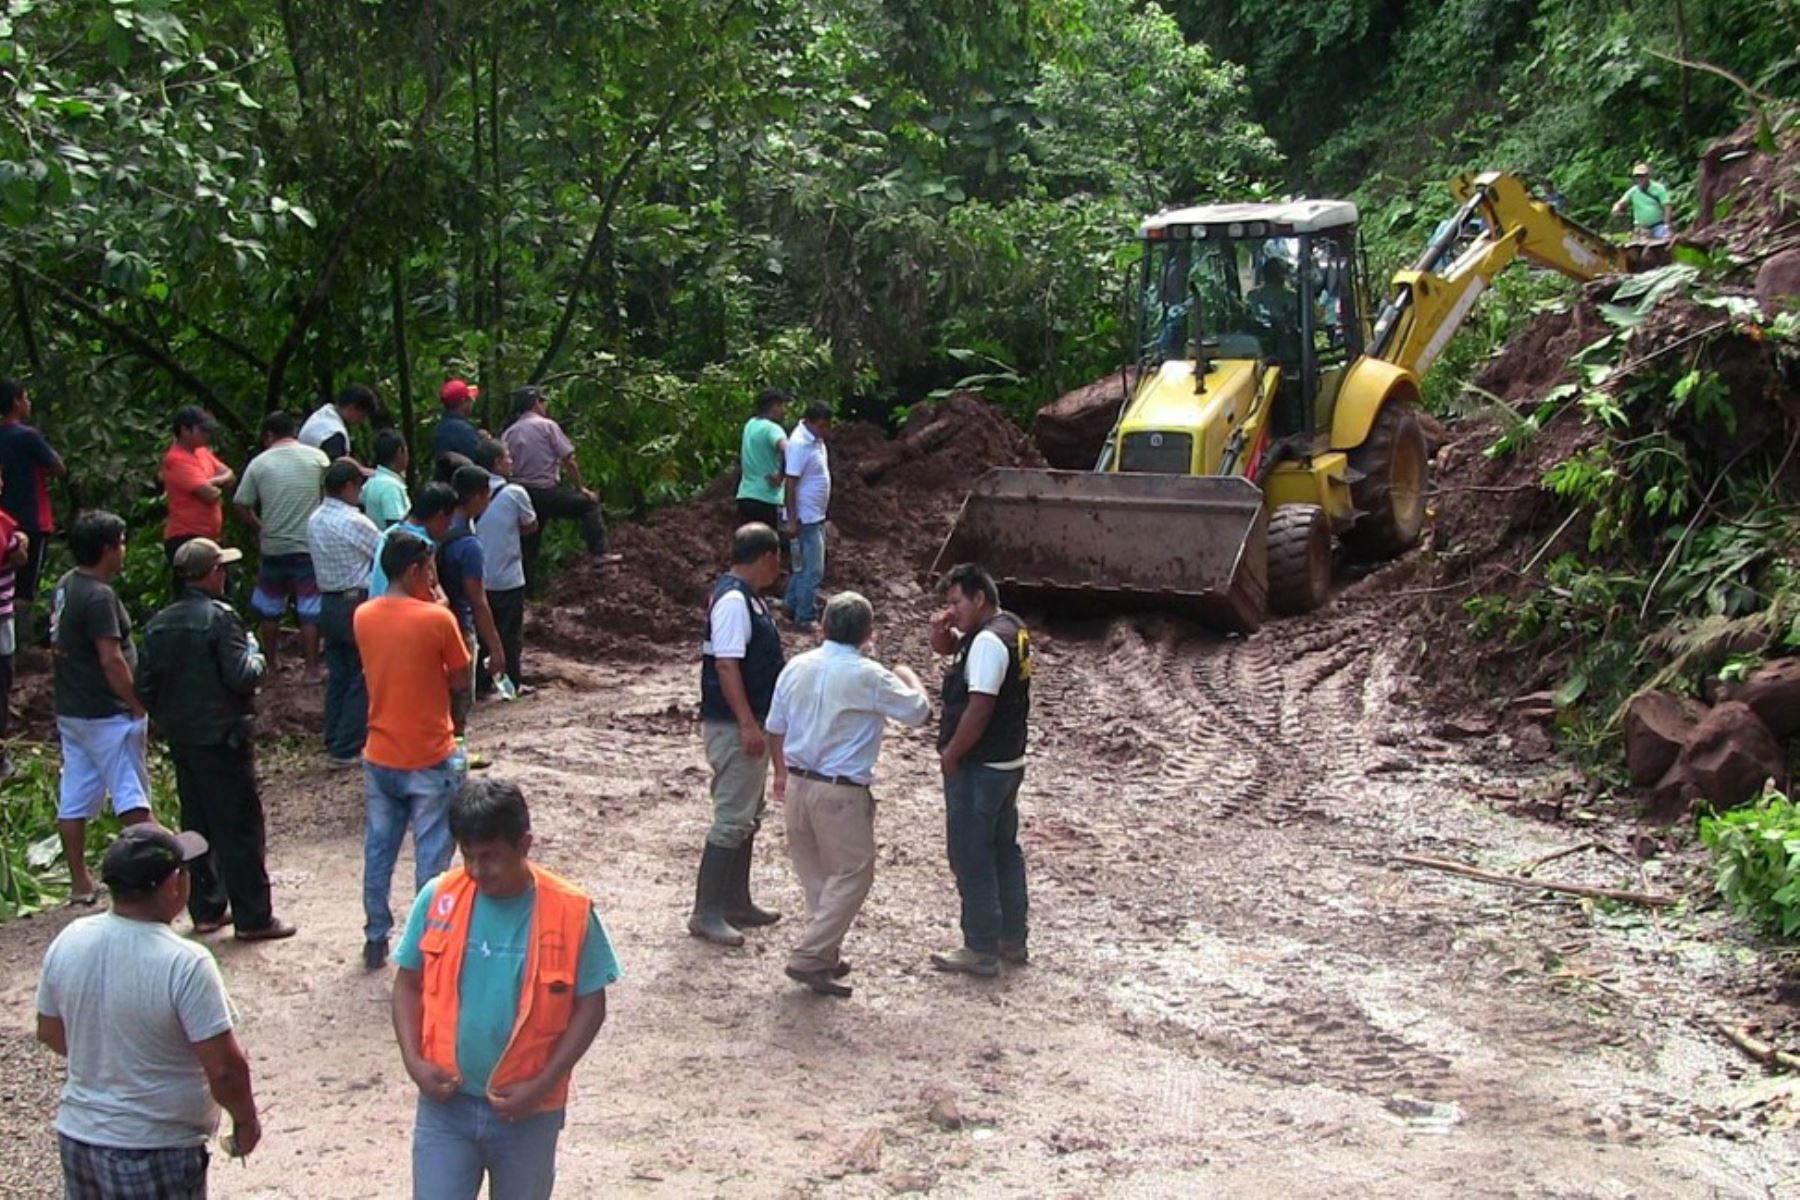 El Ejecutivo declaró el estado de emergencia en nueve distritos de la región Moquegua, debido a la ocurrencia de deslizamientos y huaicos provocados por las intensas lluvias, para que se apliquen las acciones de excepción, inmediatas y necesarias, de respuesta y rehabilitación que correspondan. ANDINA